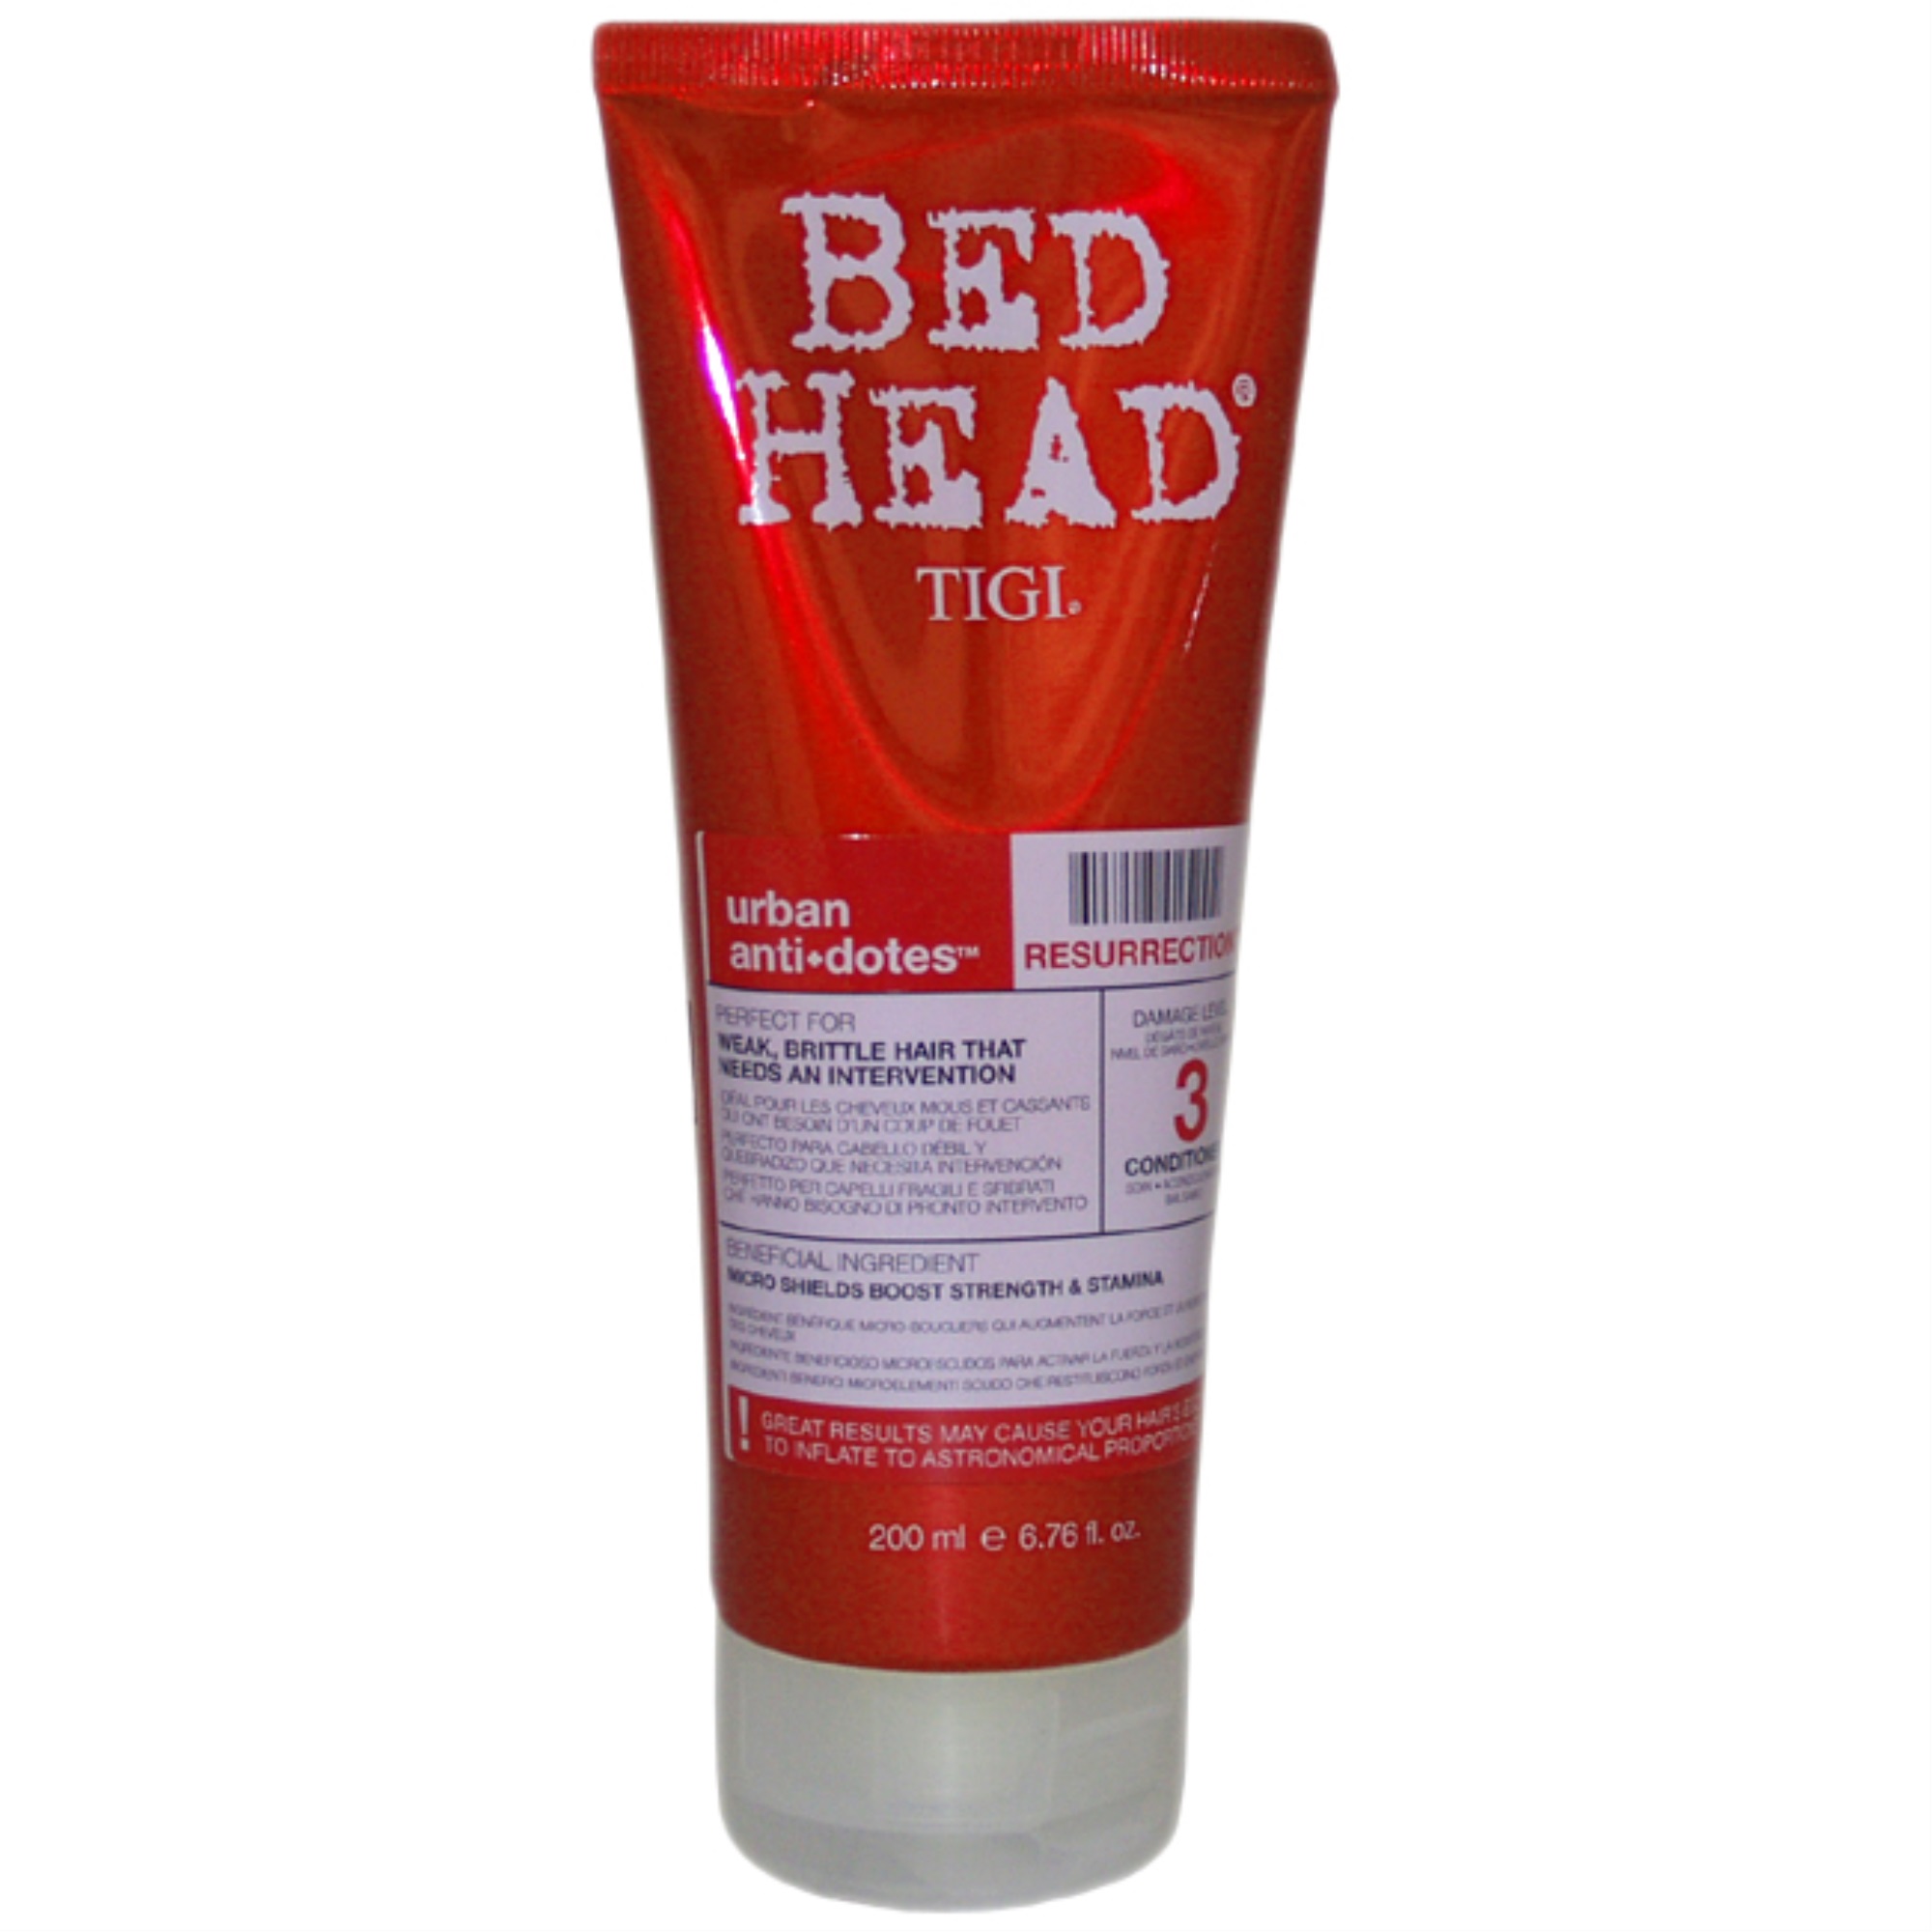 Tigi Bed Head Urban Antidotes Resurrection Conditioner by TIGI for Unisex - 6.76 oz Conditioner